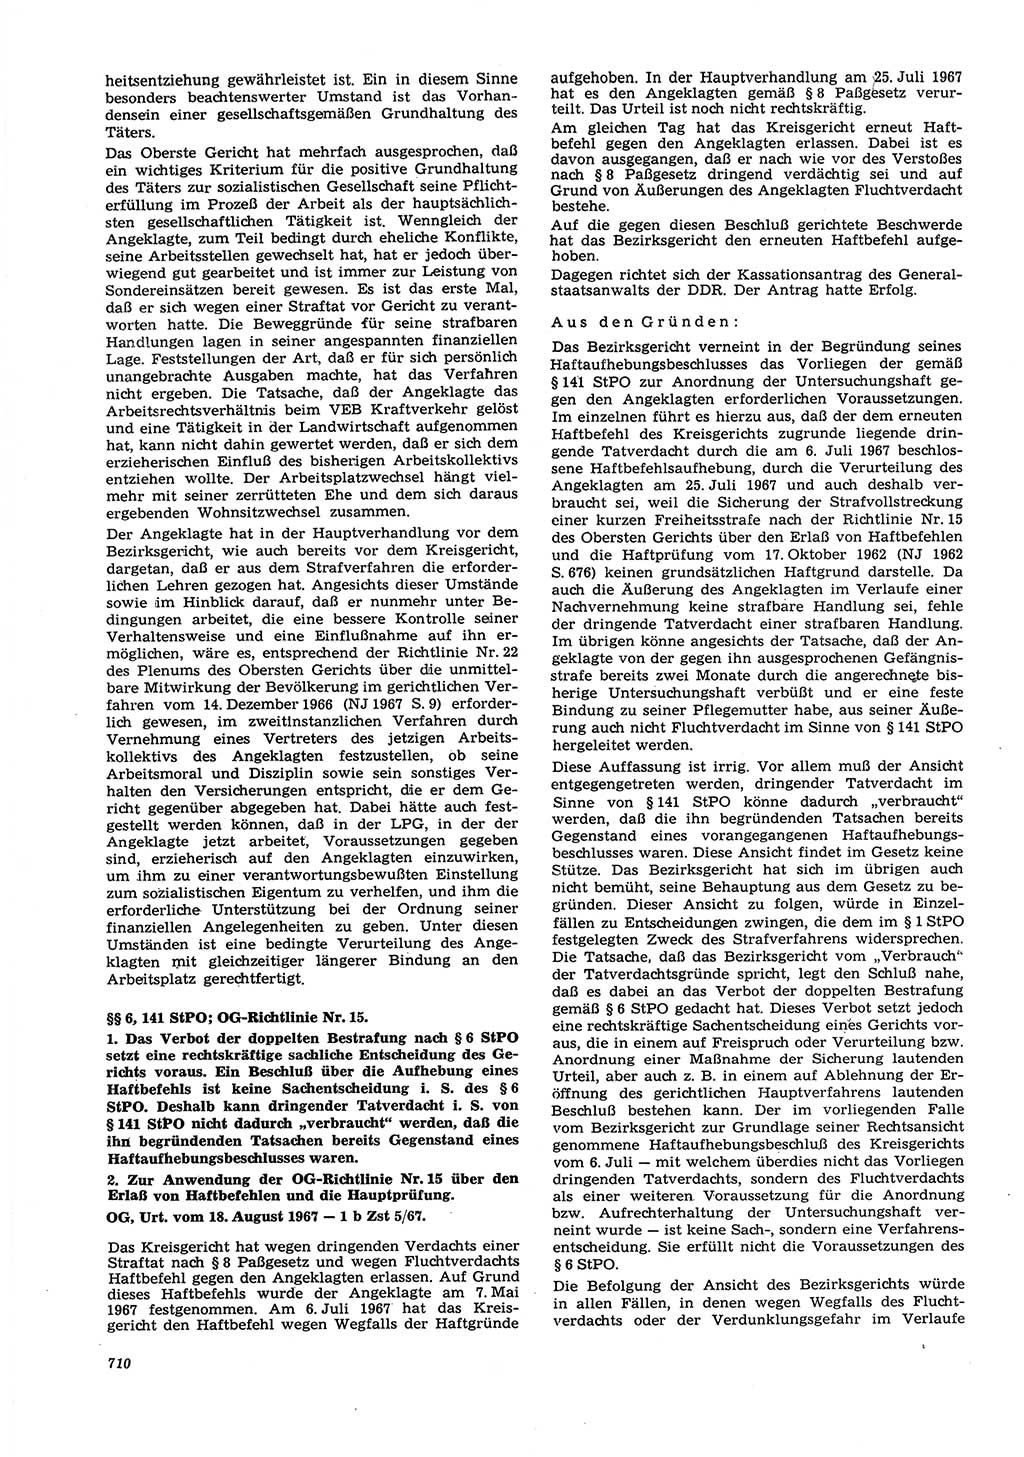 Neue Justiz (NJ), Zeitschrift für Recht und Rechtswissenschaft [Deutsche Demokratische Republik (DDR)], 21. Jahrgang 1967, Seite 710 (NJ DDR 1967, S. 710)